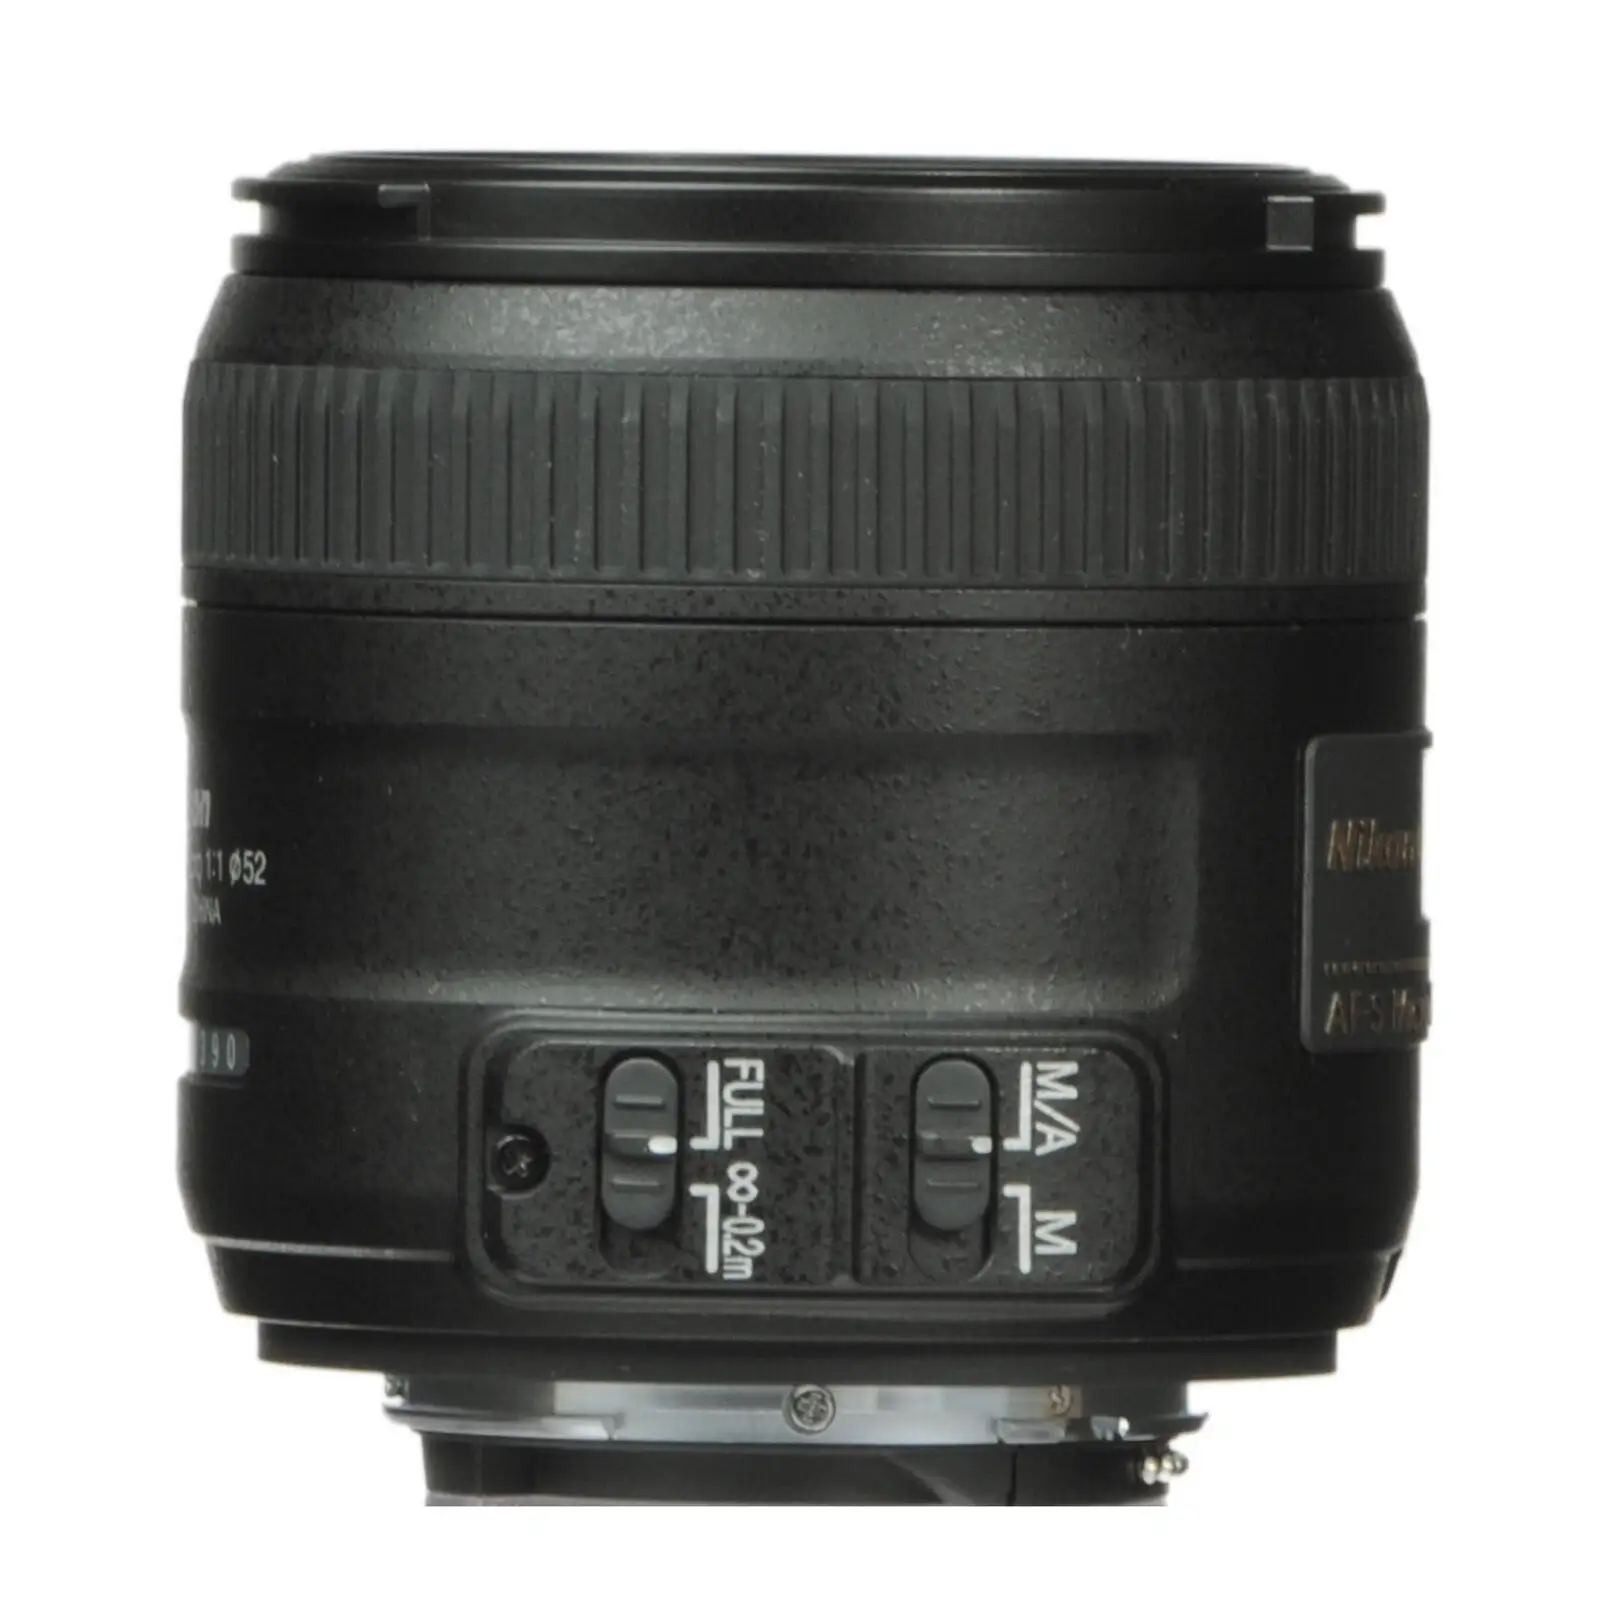 N.ikon AF-S DX Micro 40mm F/2.8G macro lens